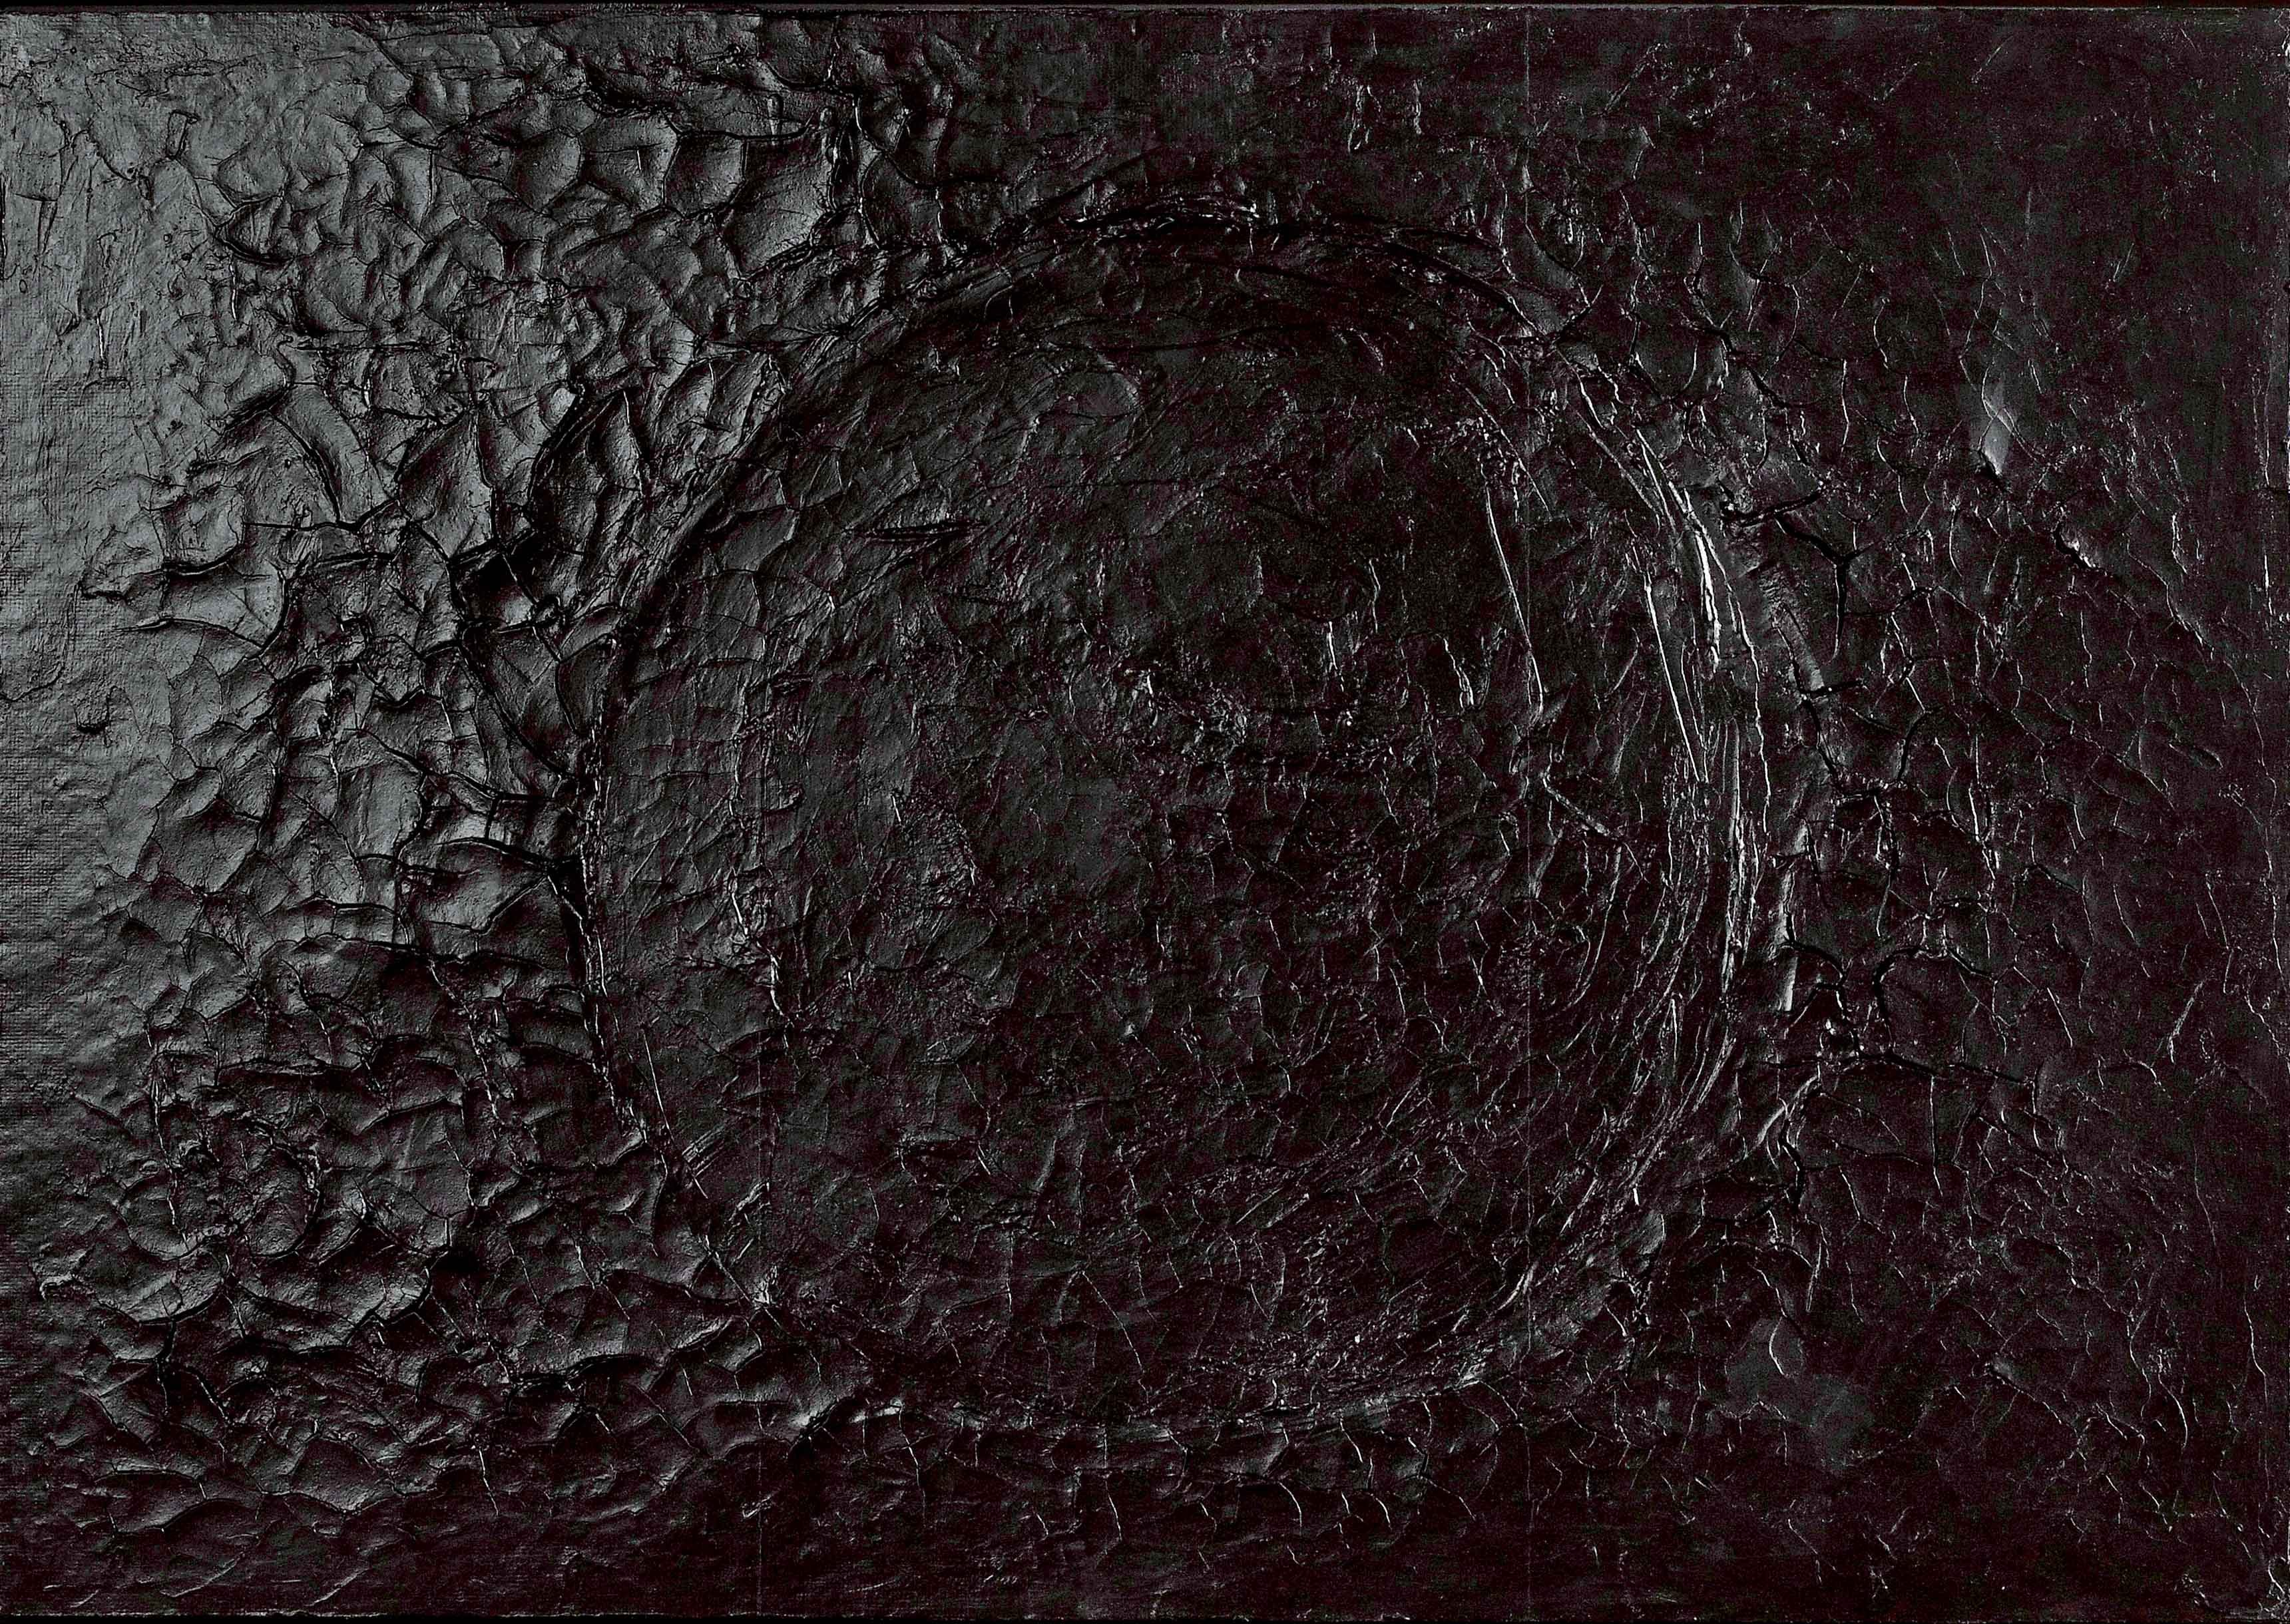 Nerro Cretto (1970), d'Alberto Burri. Acrovinyl sur Celotex, 70 x 103 cm.